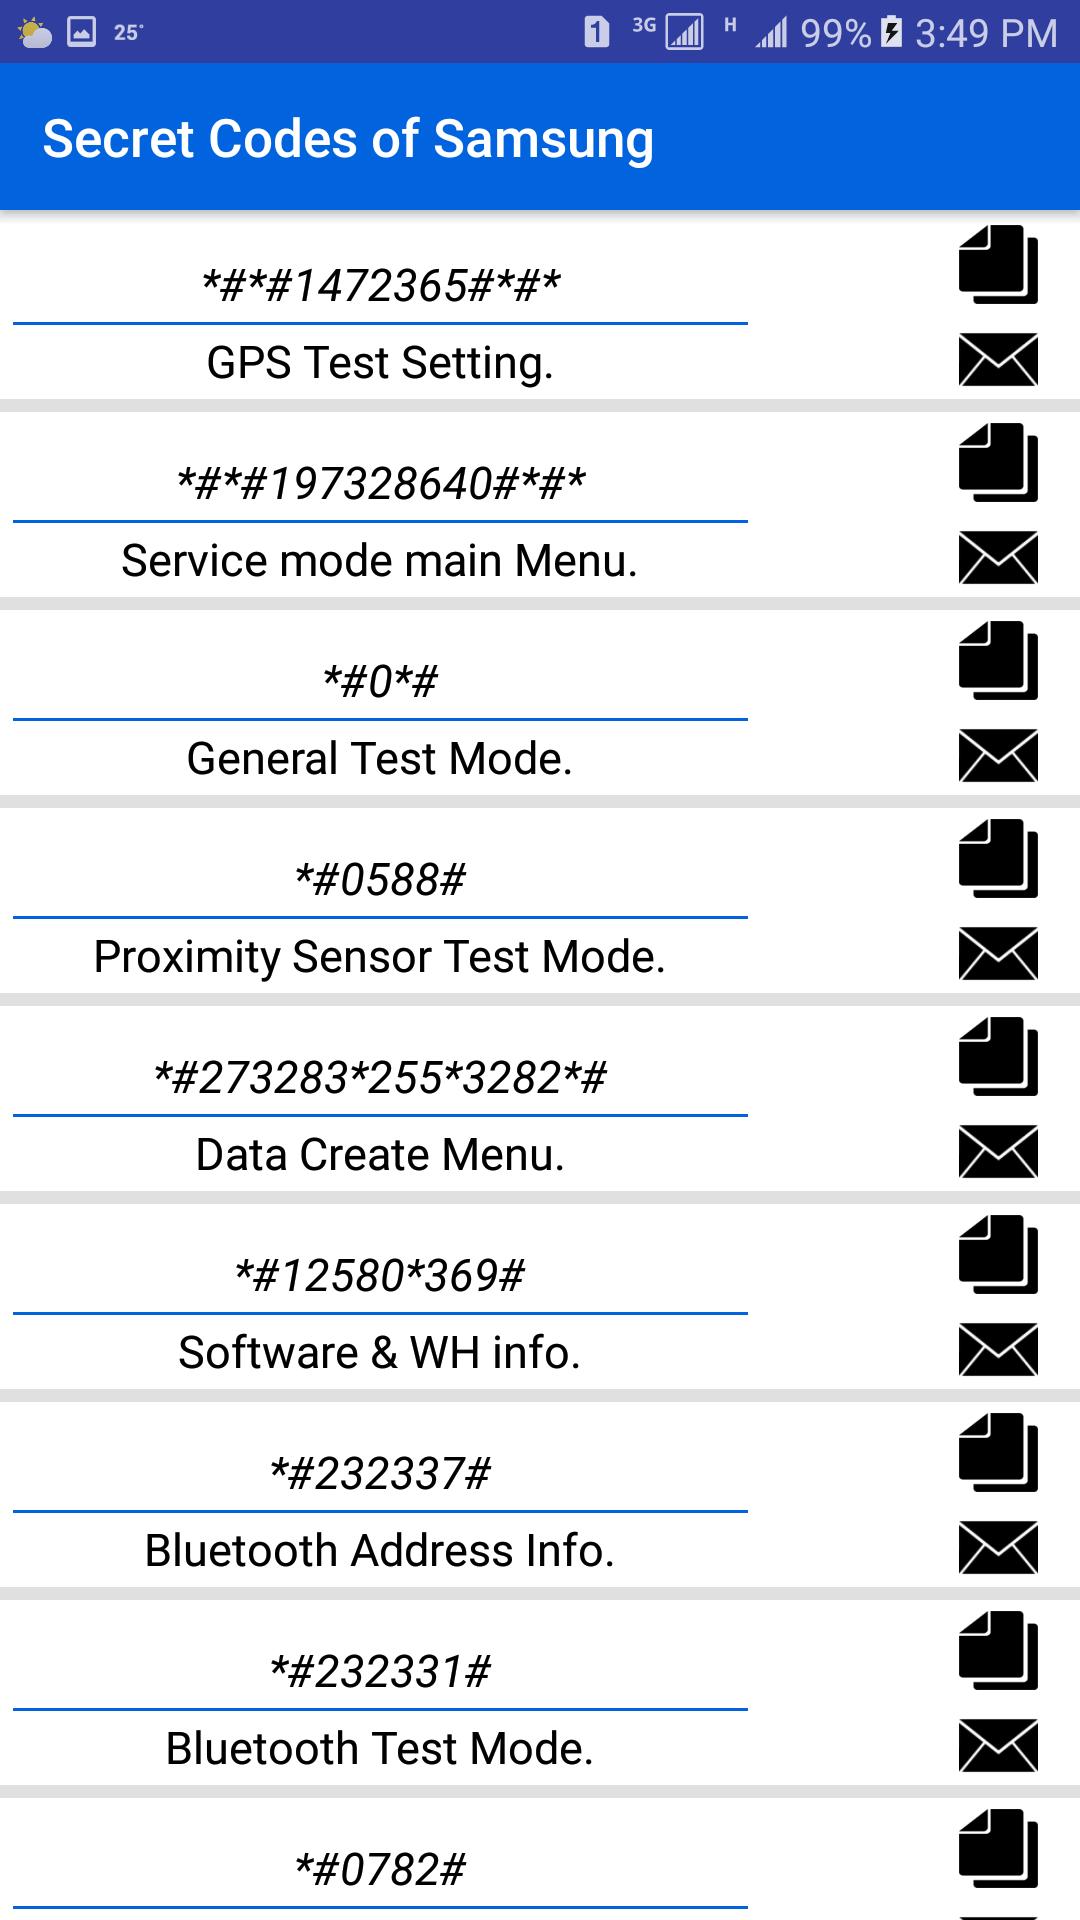 Код самсунг настройка. Код проверки телефона самсунг. Секретные коды для андроид самсунг. Коды самсунг для проверки телефона. Сервисные коды для Samsung Galaxy s.